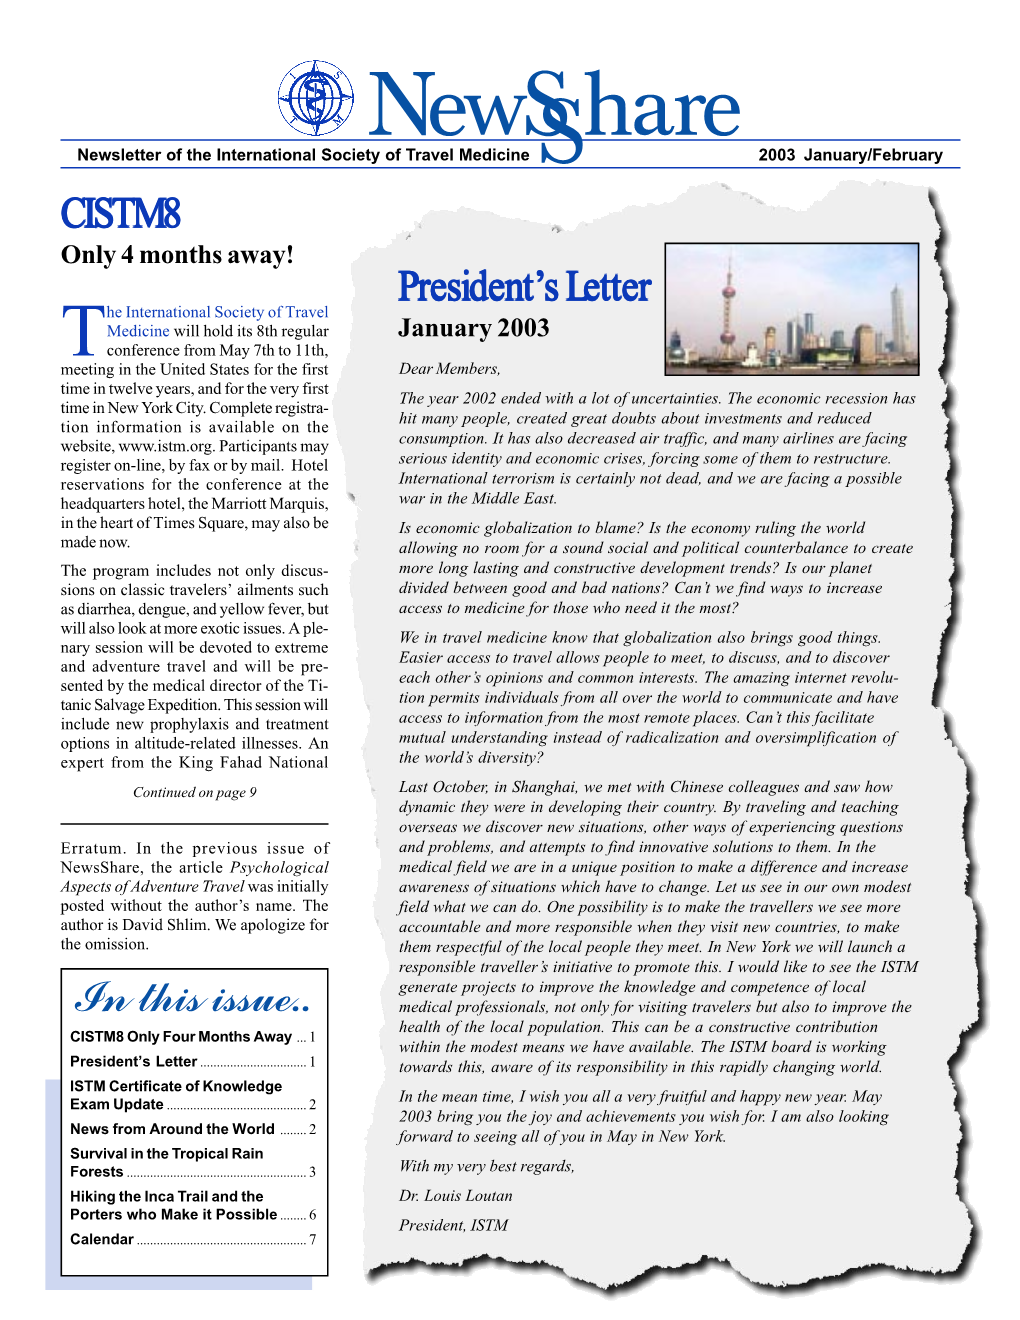 CISTM8 President's Letter